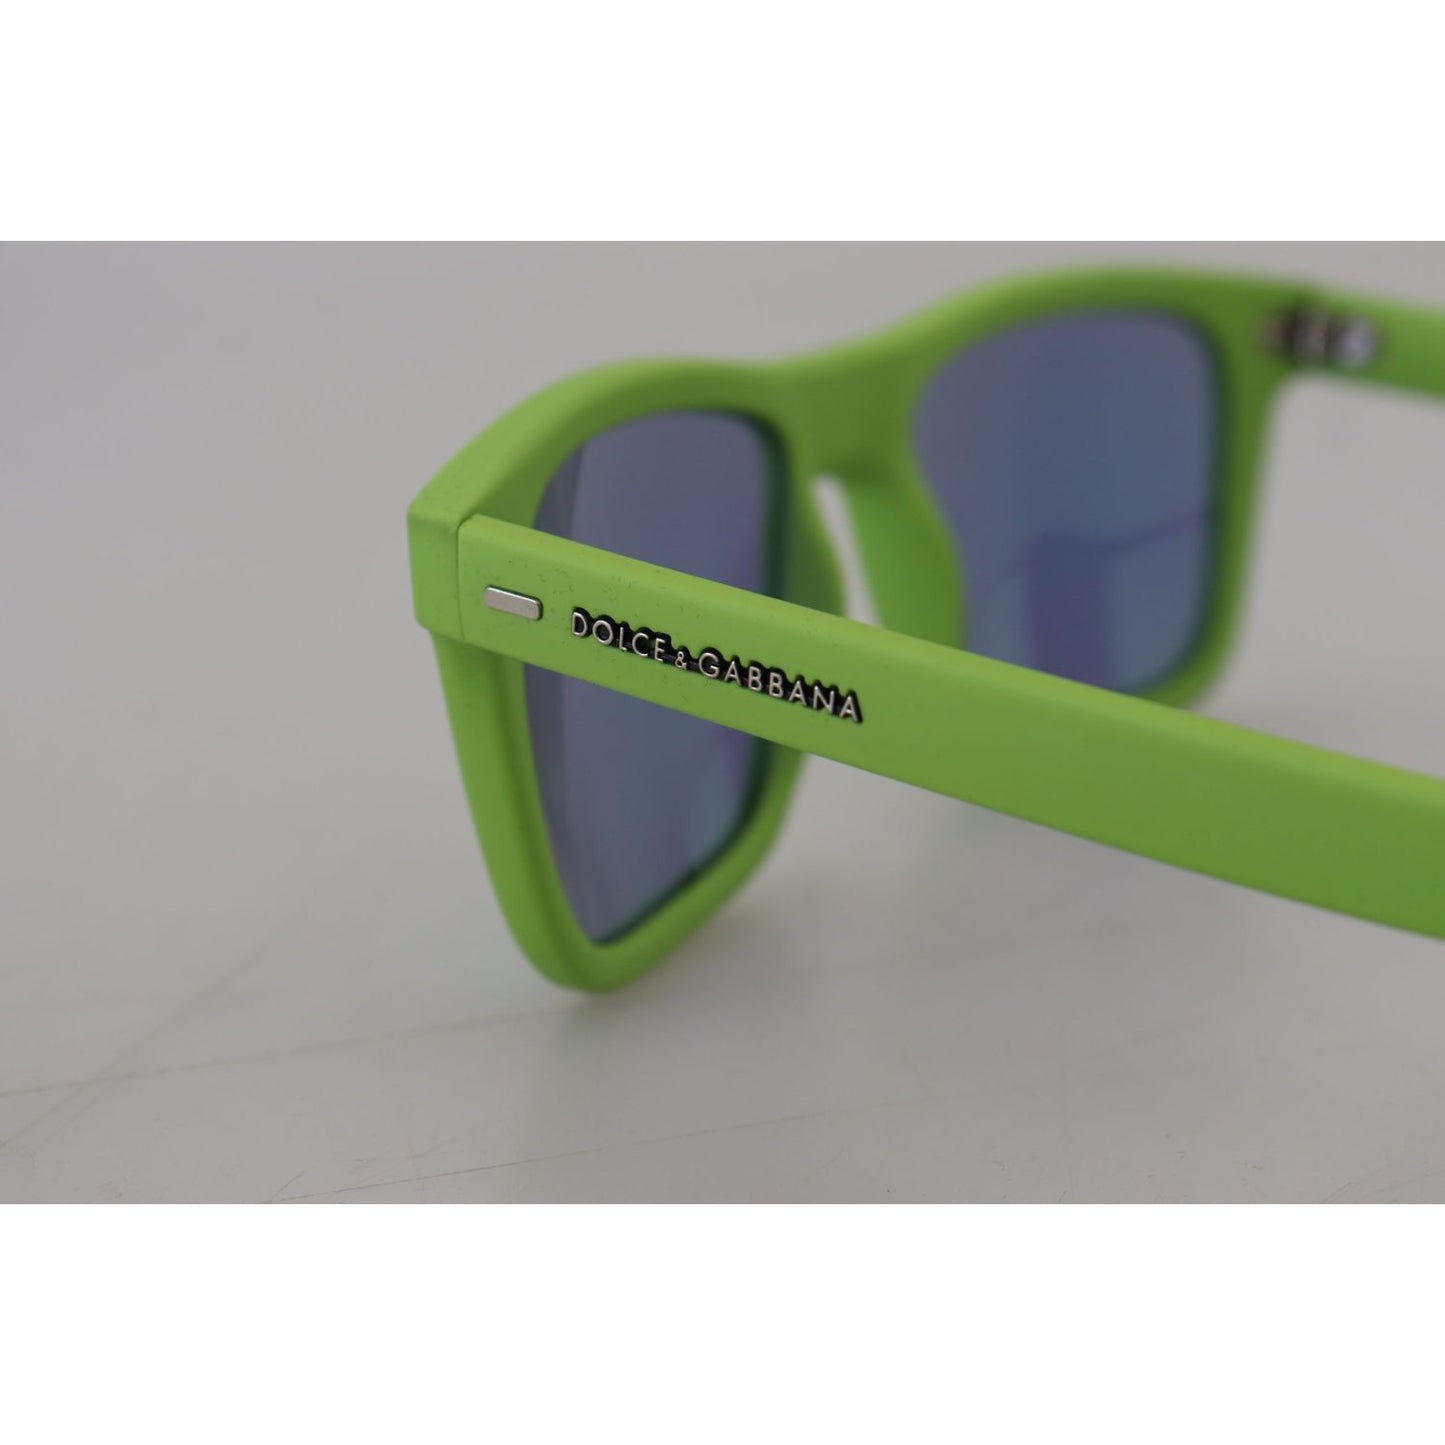 Dolce & Gabbana Acid Green Chic Full Rim Sunglasses green-rubber-full-rim-frame-shades-dg6095-acid-sunglasses IMG_4206-scaled-454c5125-7e3.jpg